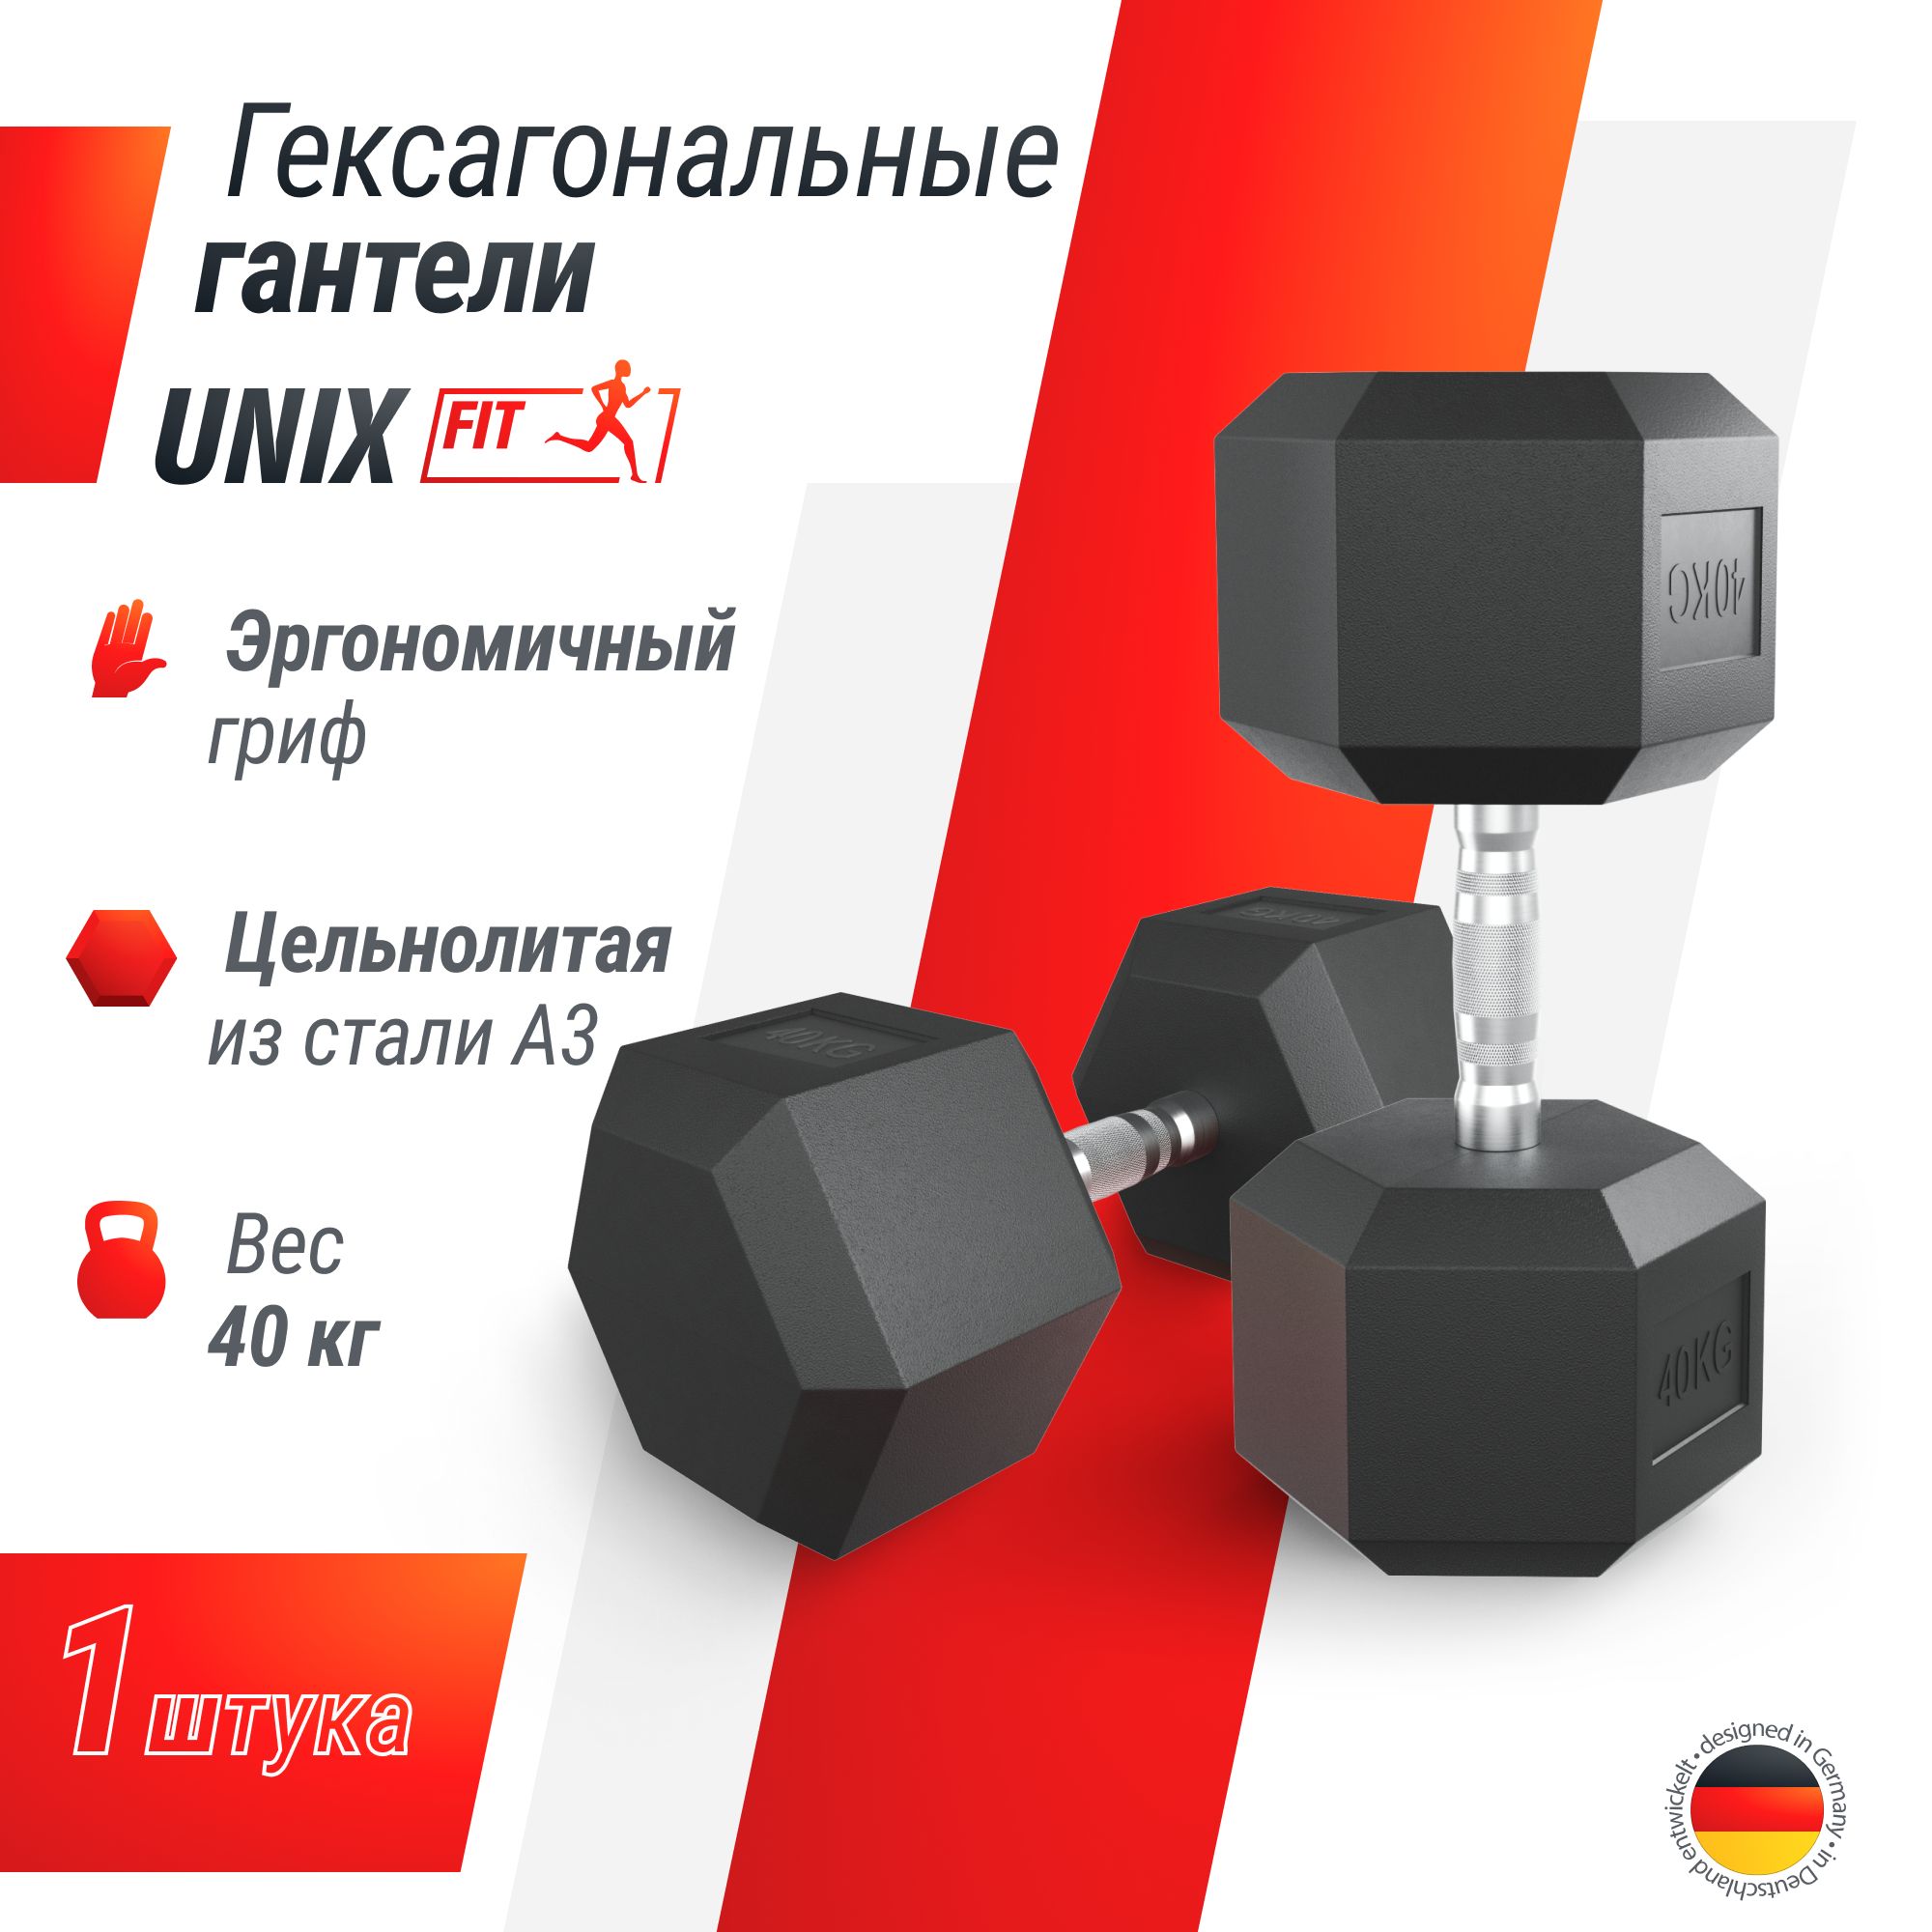 Гантель гексагональная UNIX Fit обрезиненная 40 кг шт